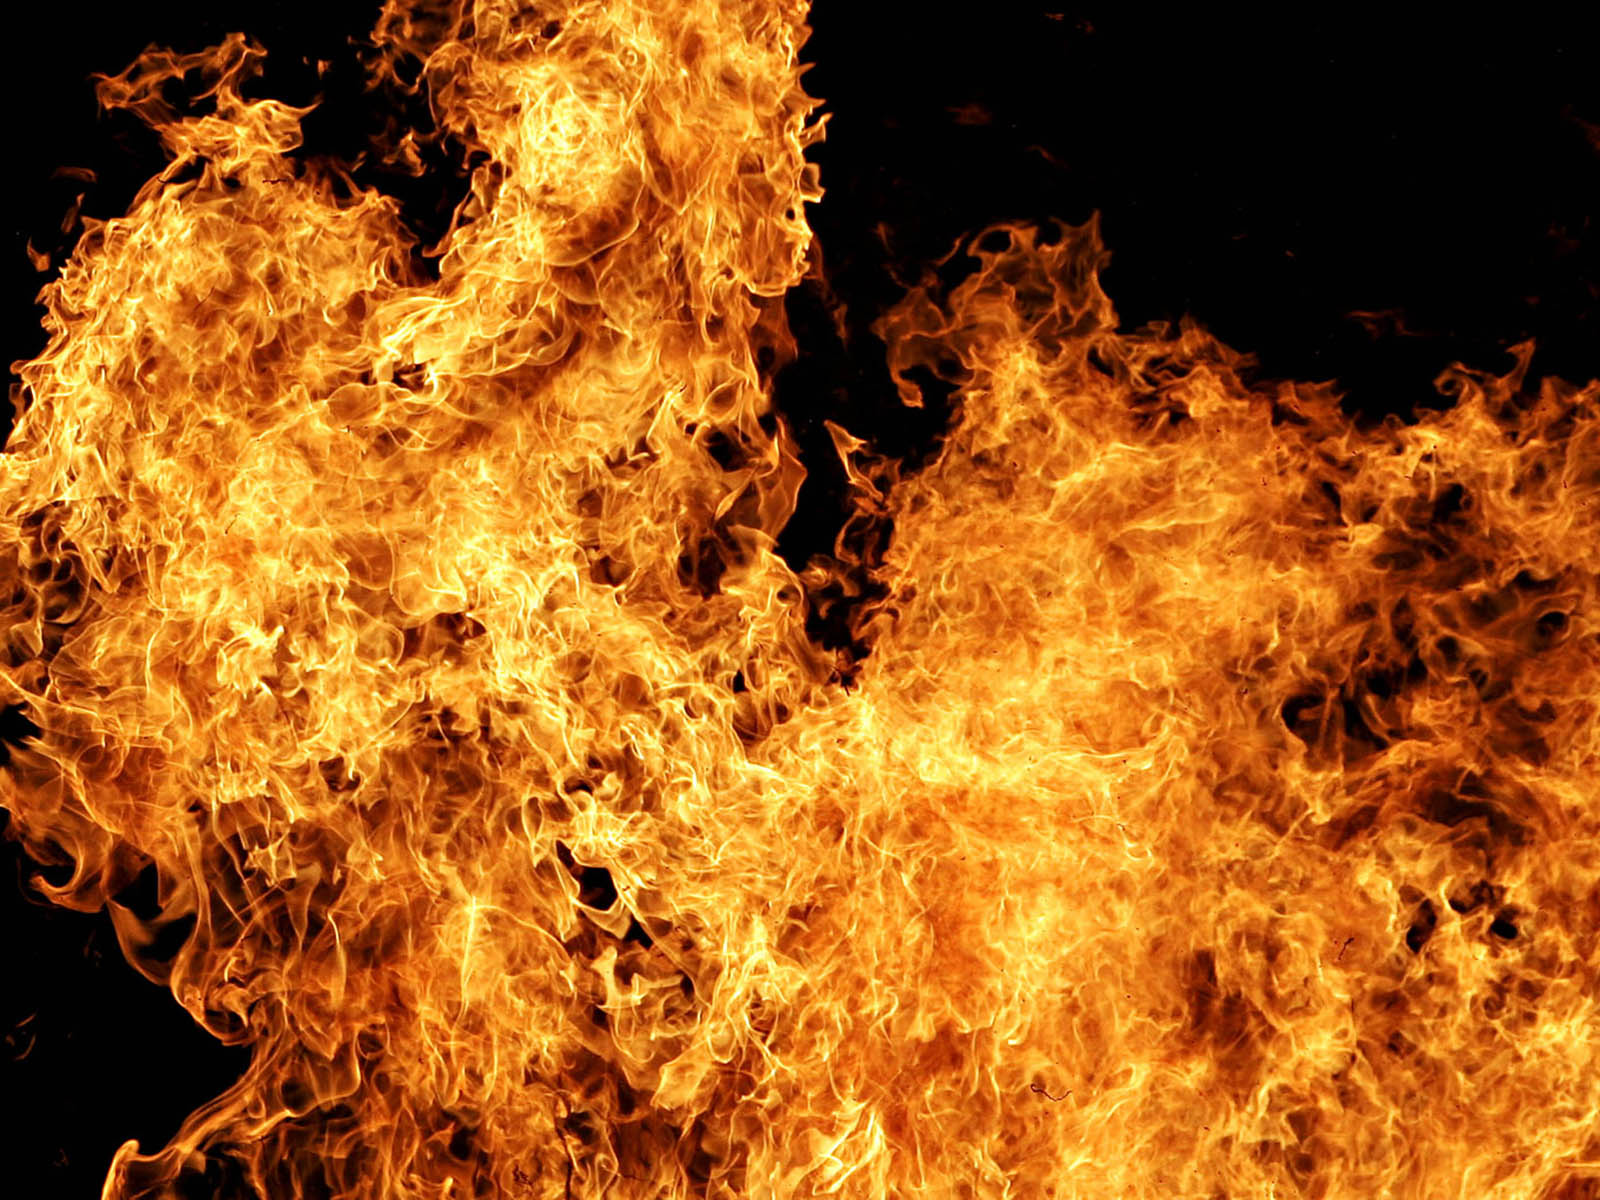 http://2.bp.blogspot.com/-R0trJG1LsKQ/T8zg8U4bZ4I/AAAAAAAADoo/k_C_PmI3SQc/s1600/Fire+Flames+3.jpg